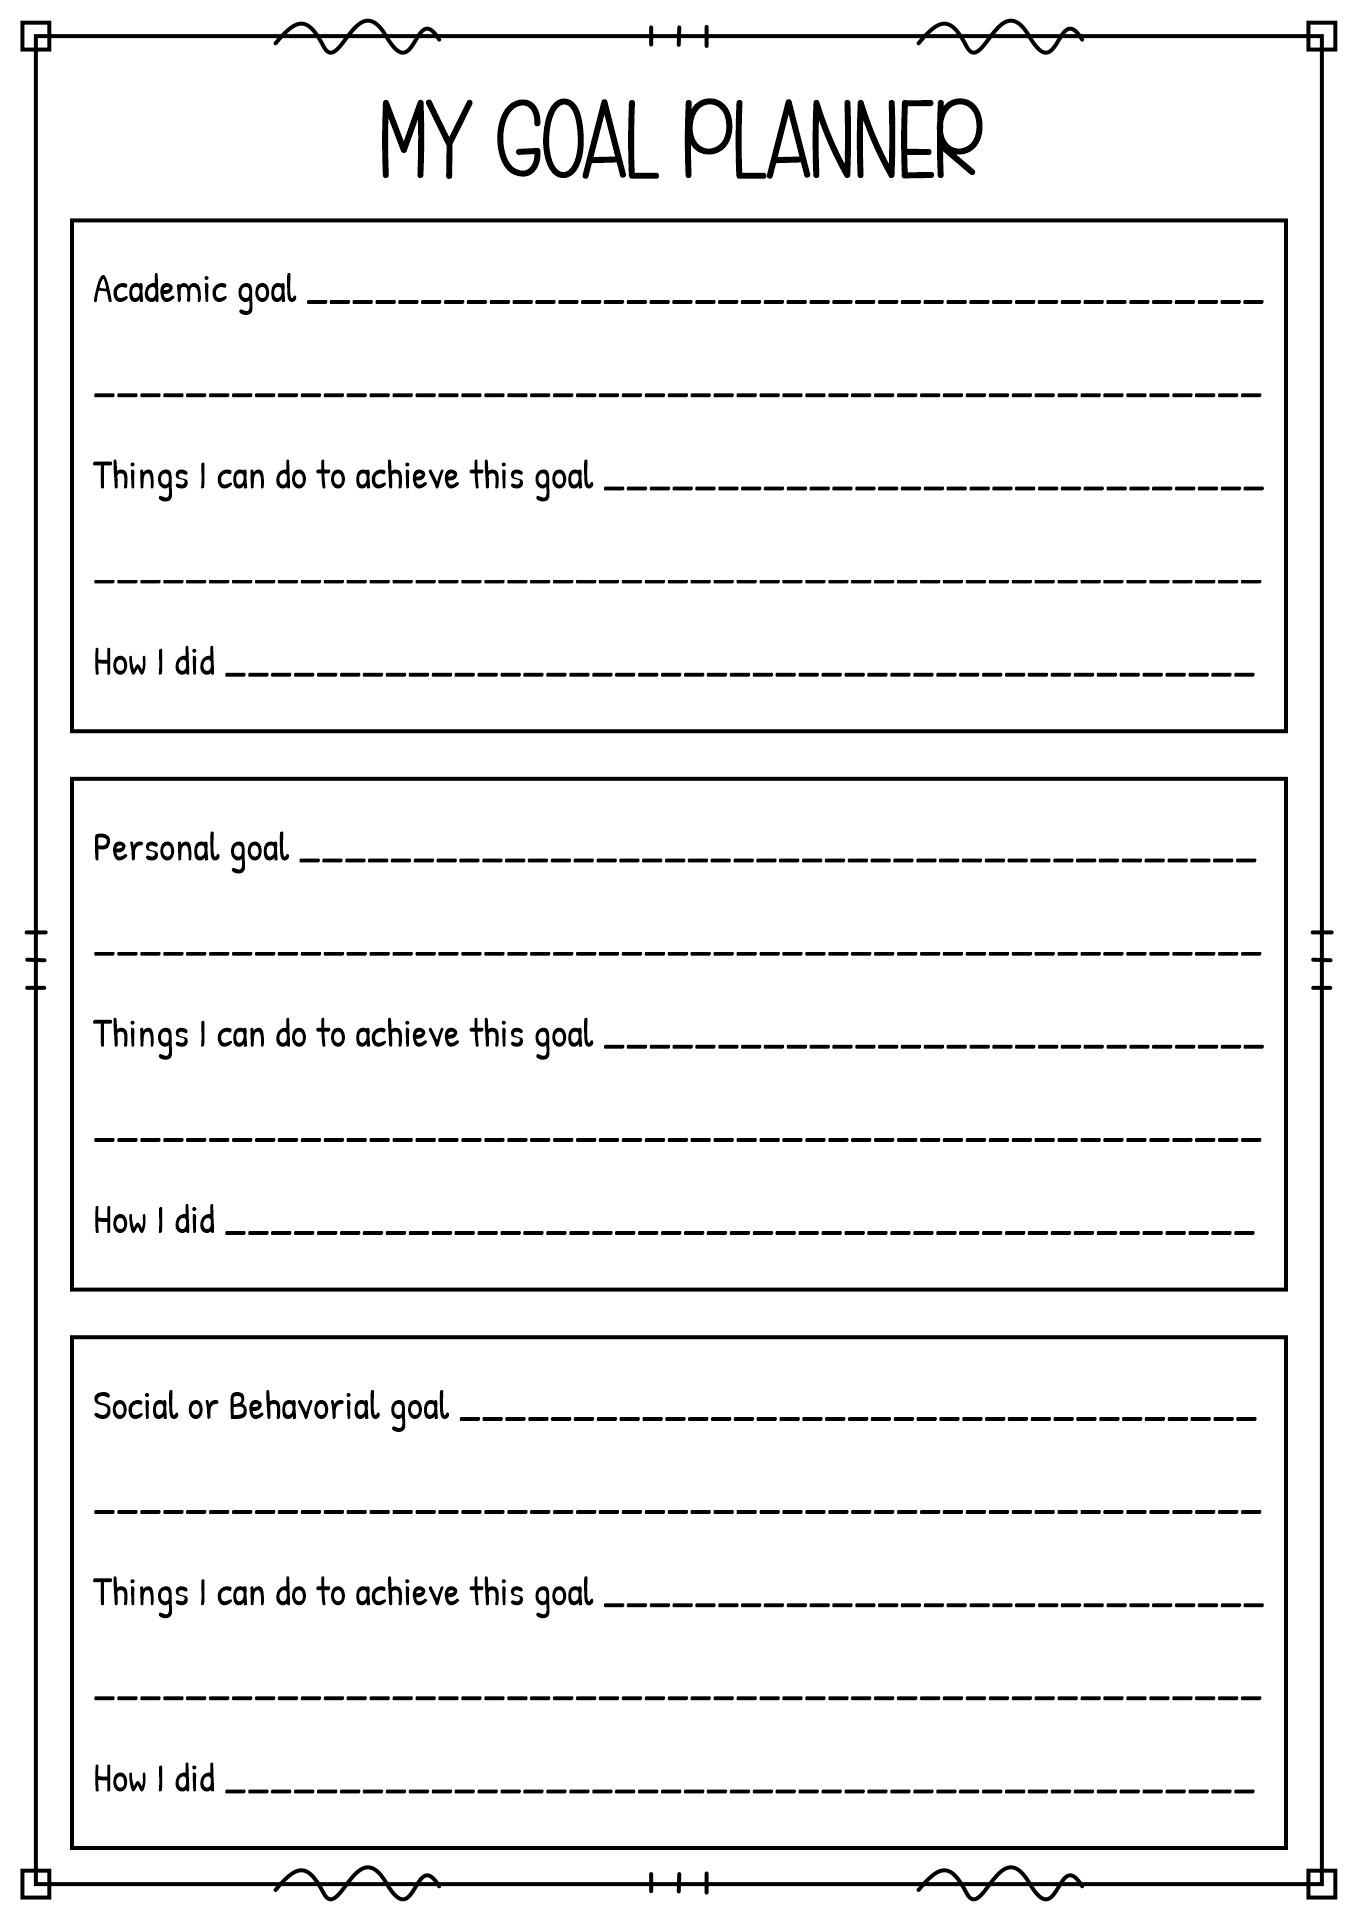 Student Goals Worksheet Image